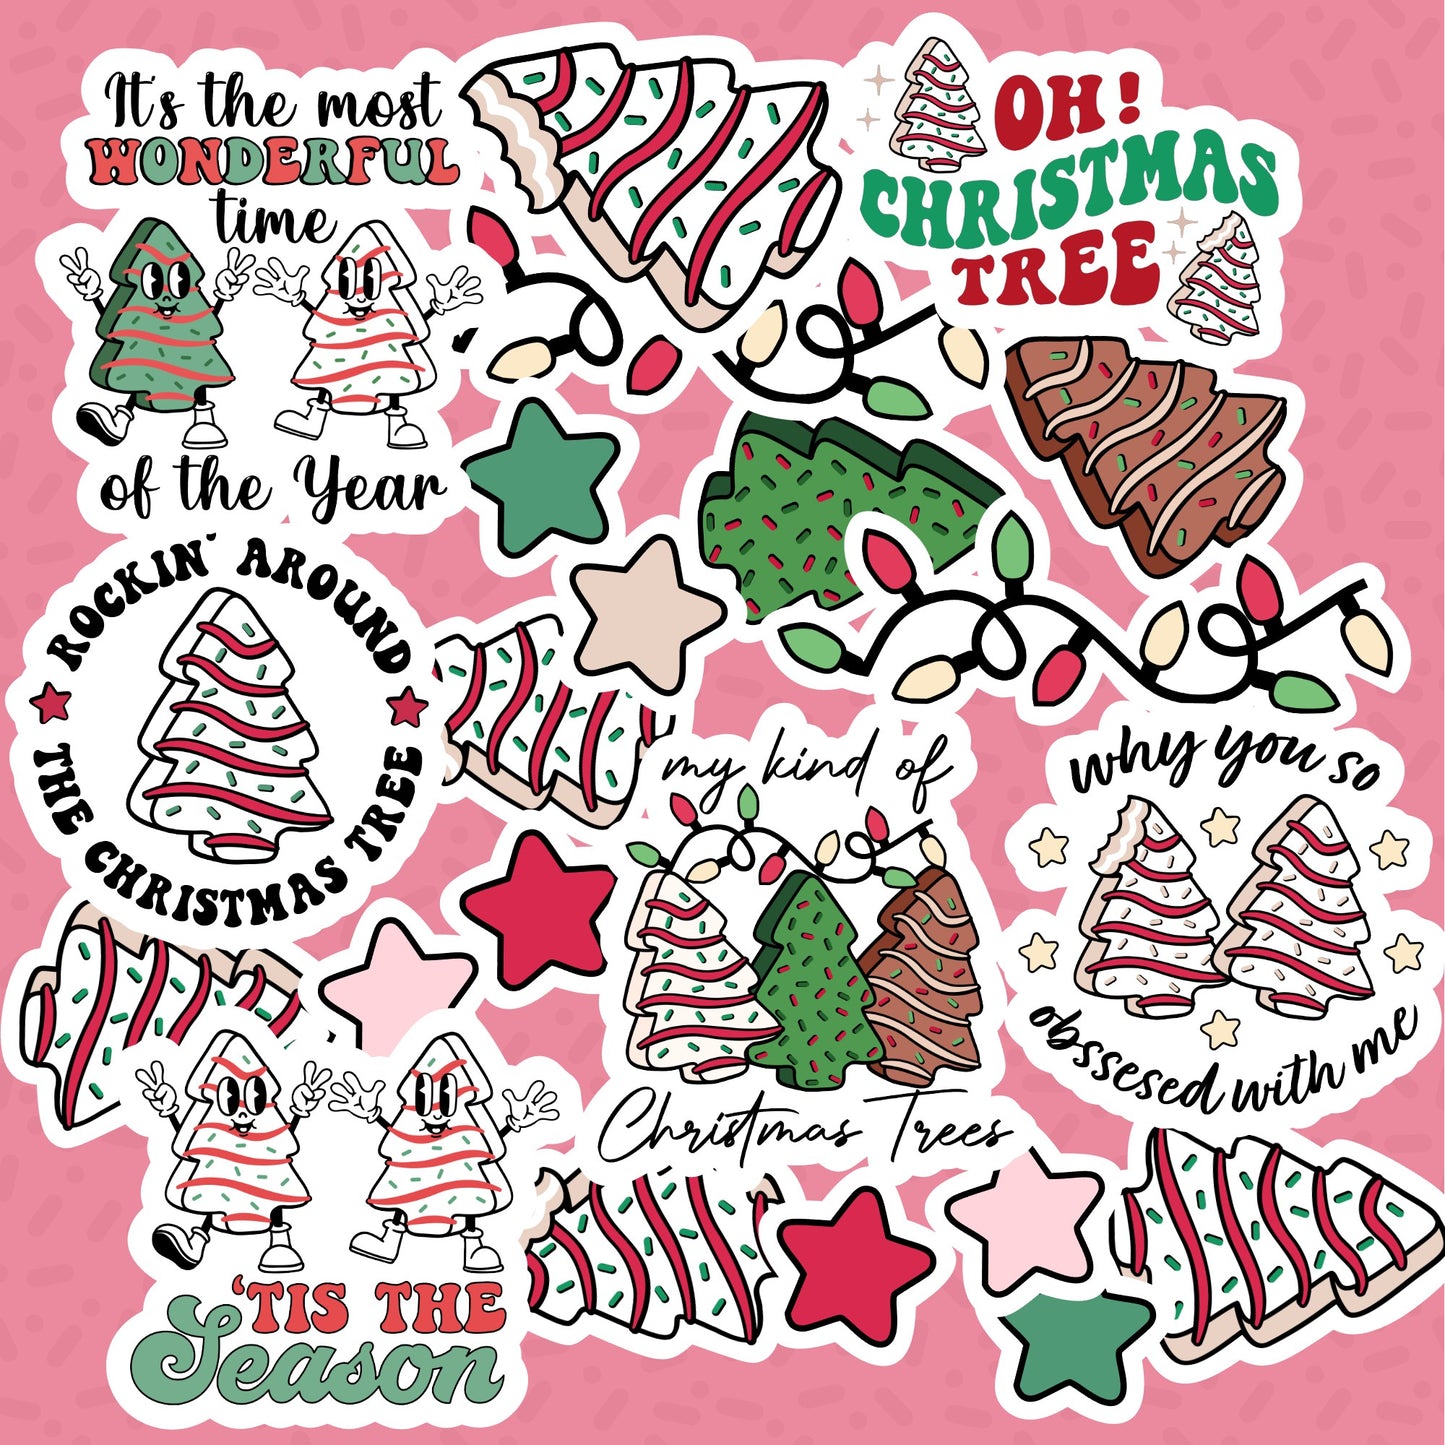 Christmas Tree Cake Die Cut Sticker Pack